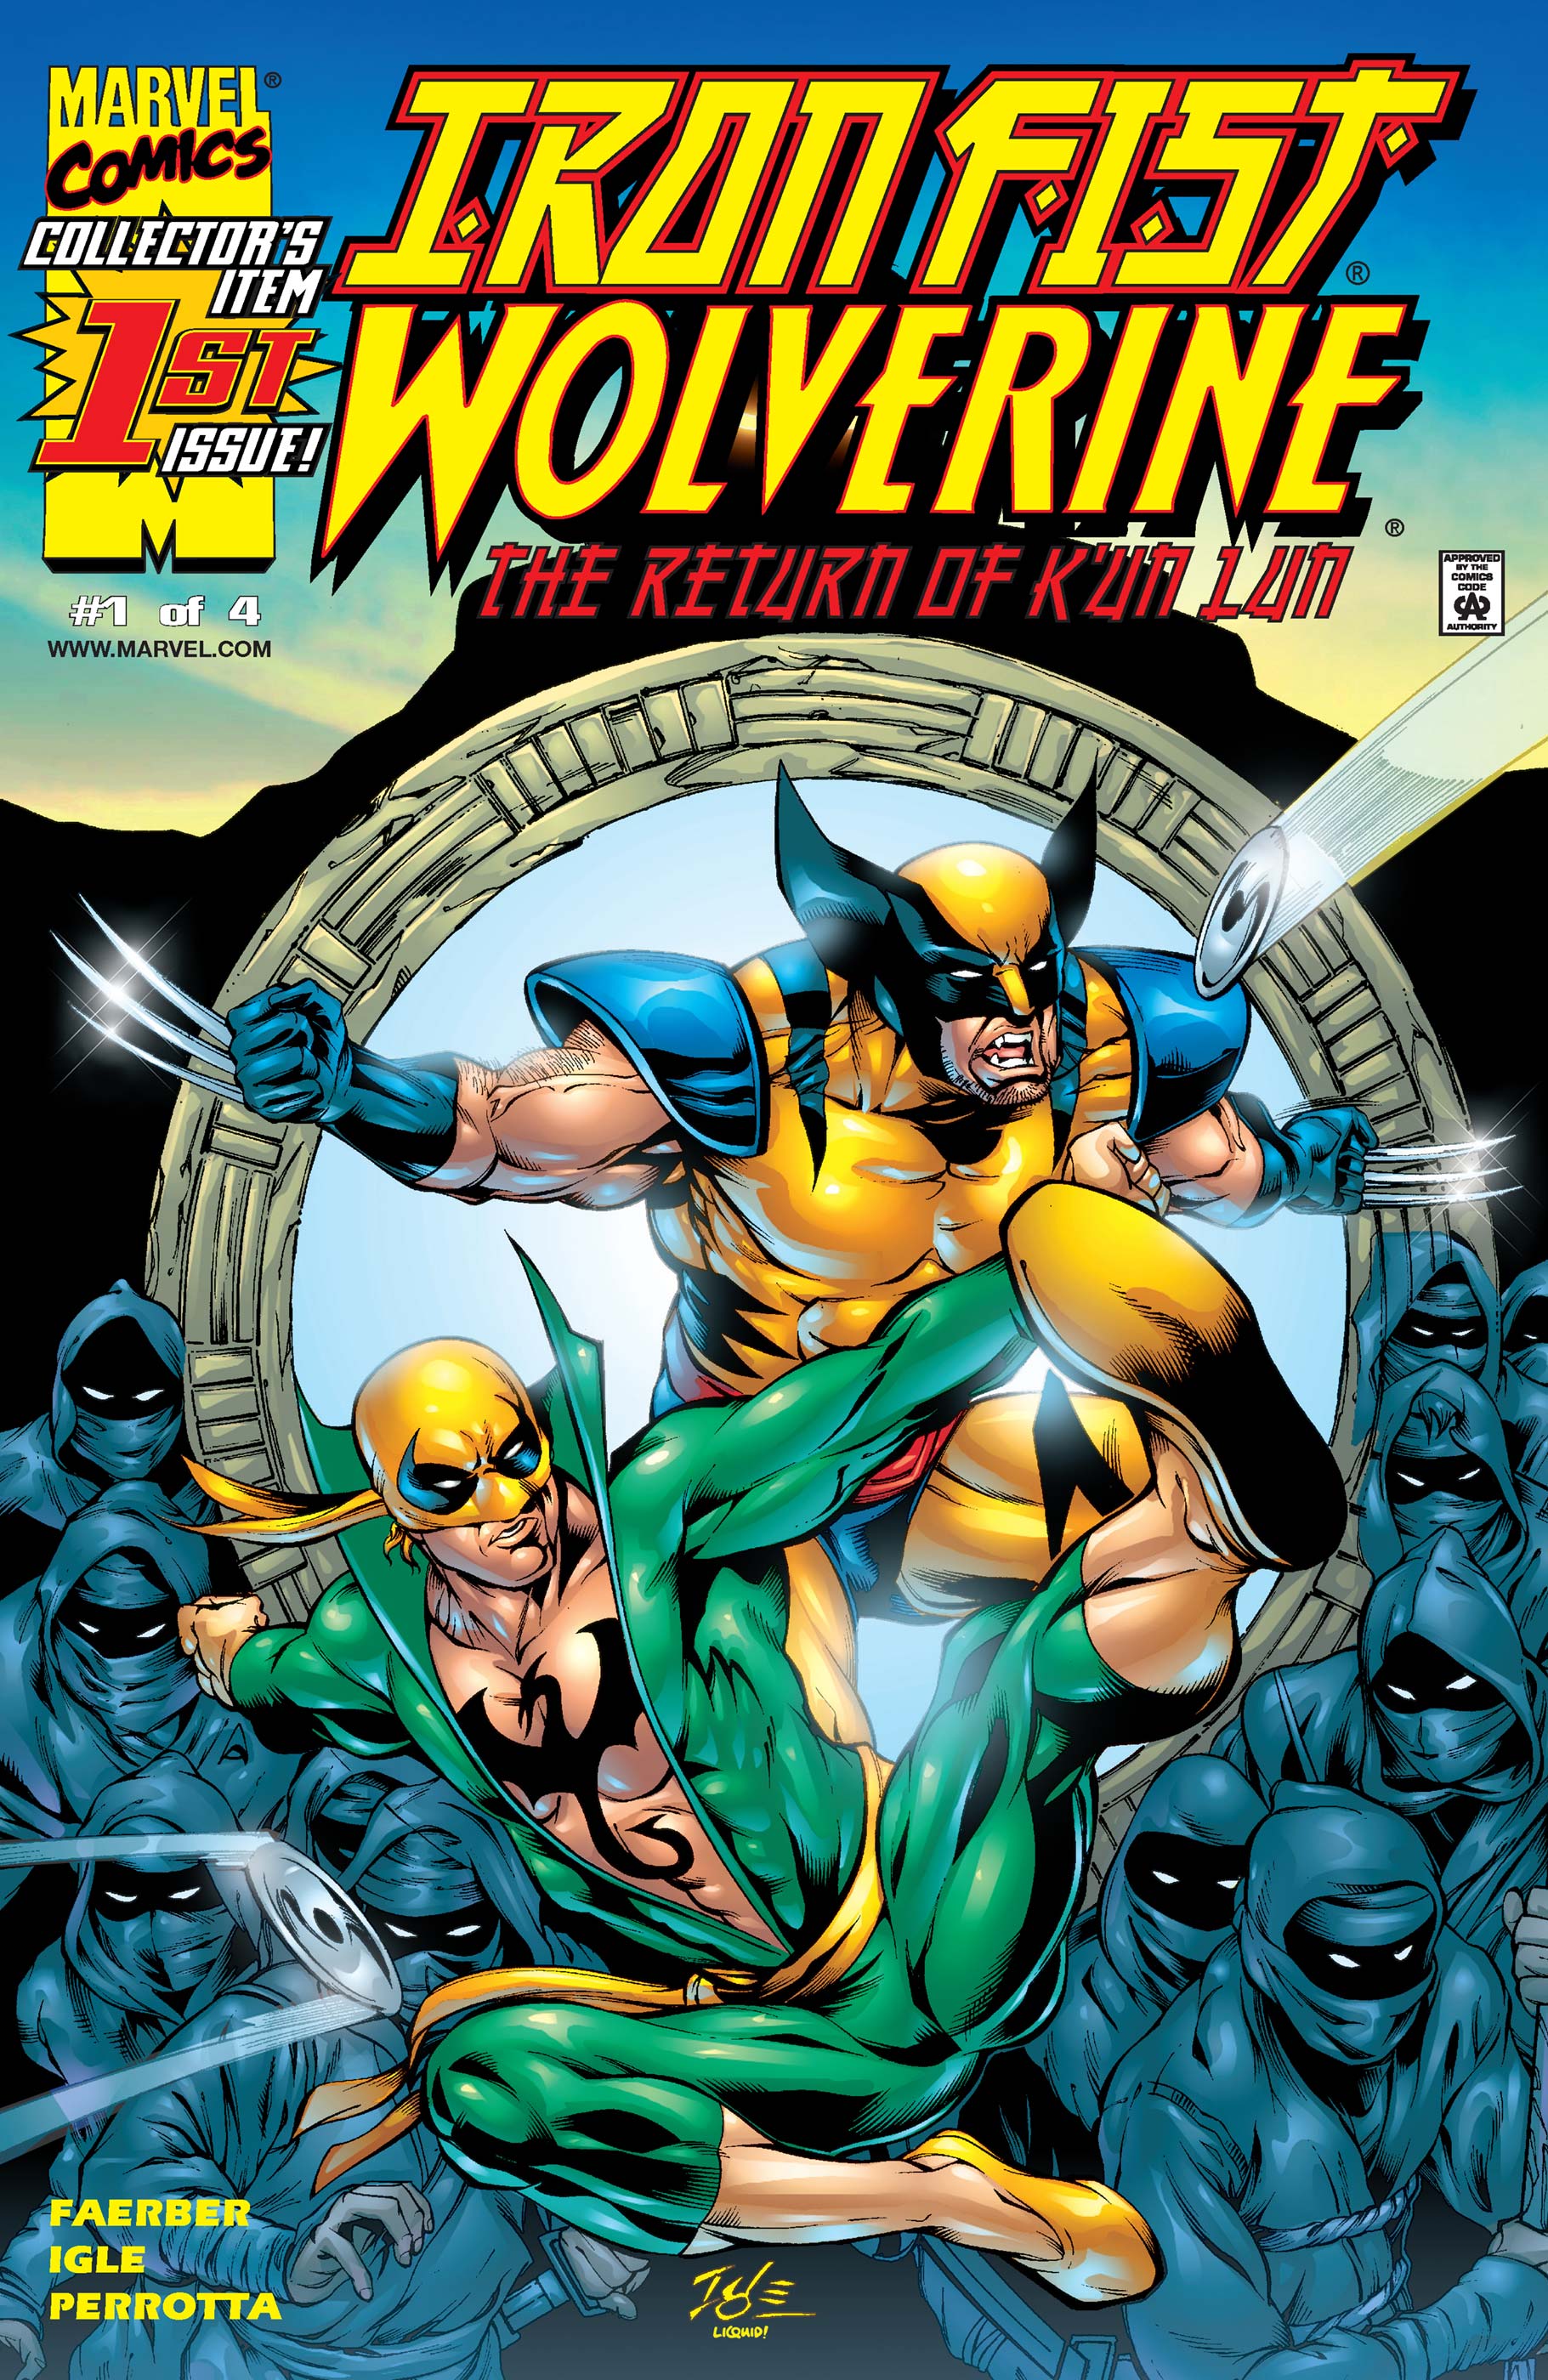 Iron Fist/Wolverine (2000) #1